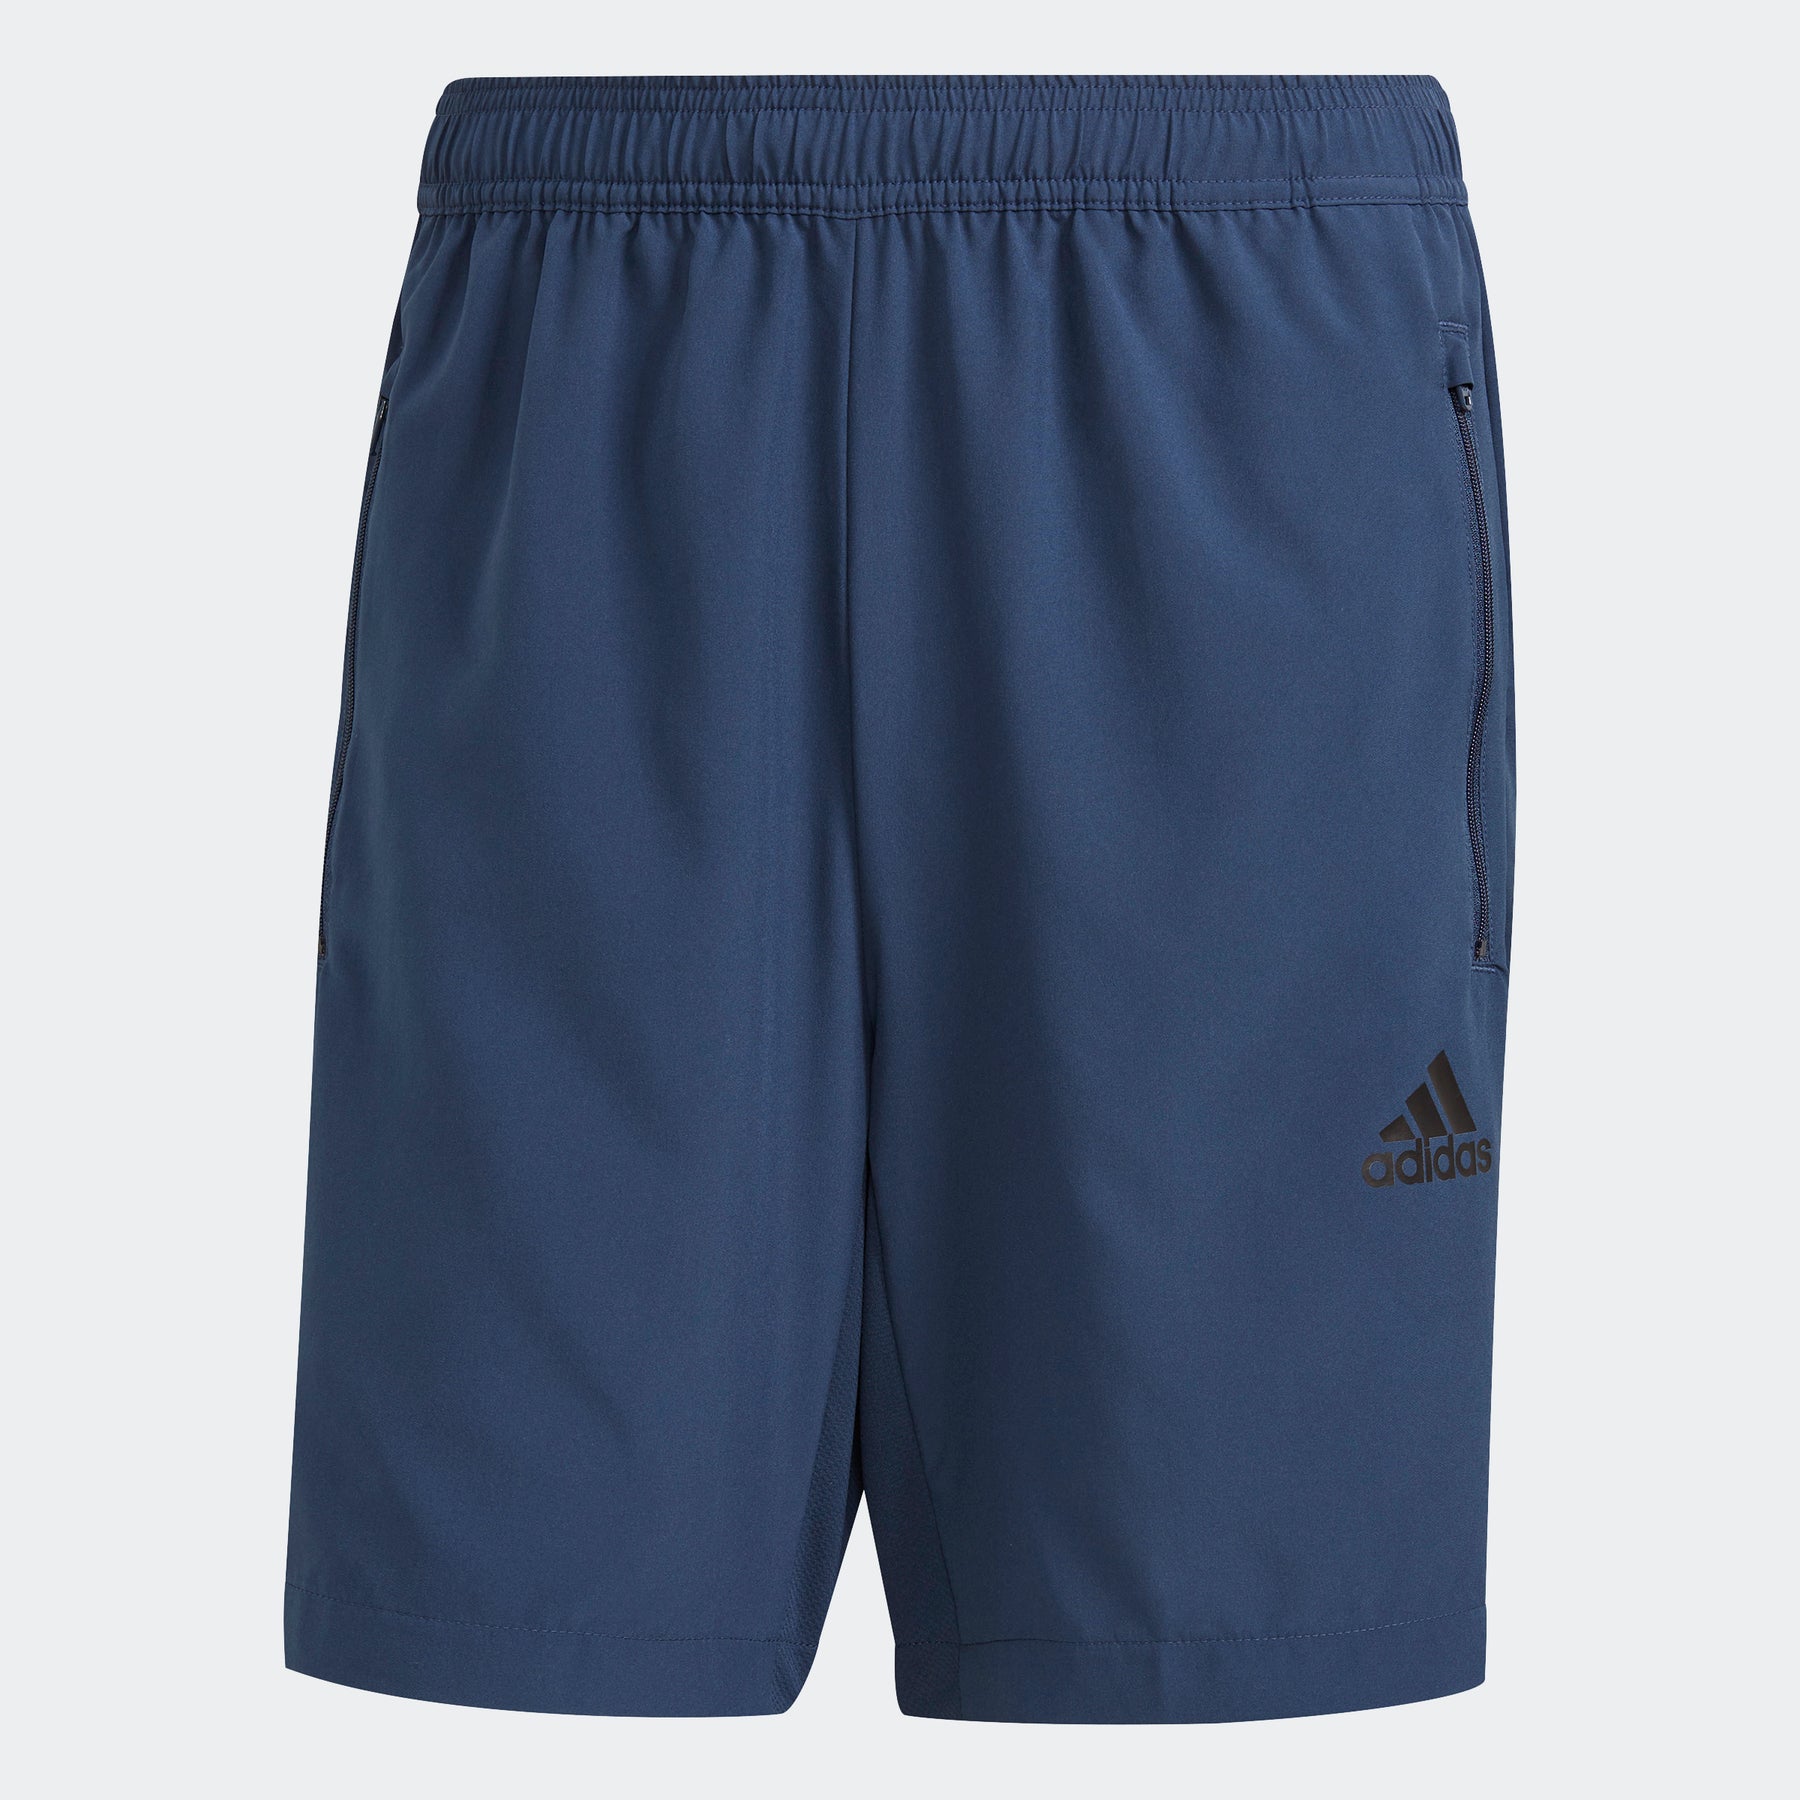 Adidas TECHFIT Padded Basketball Compression Shorts - Nex-Tech